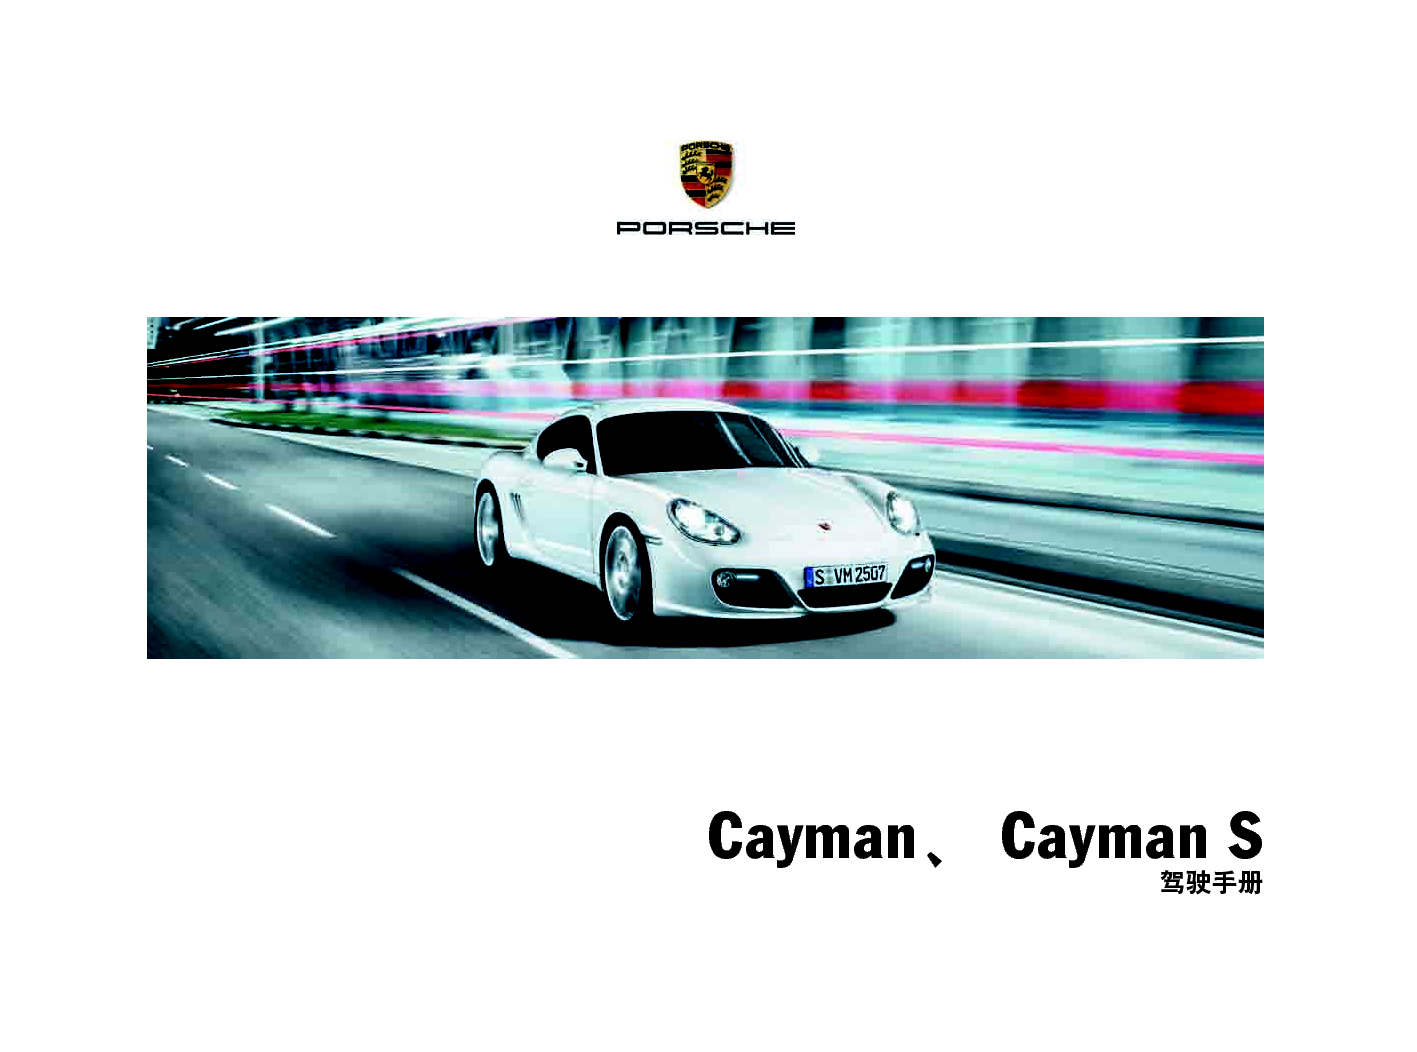 保时捷 Porsche Cayman 02/2010 使用说明书 封面